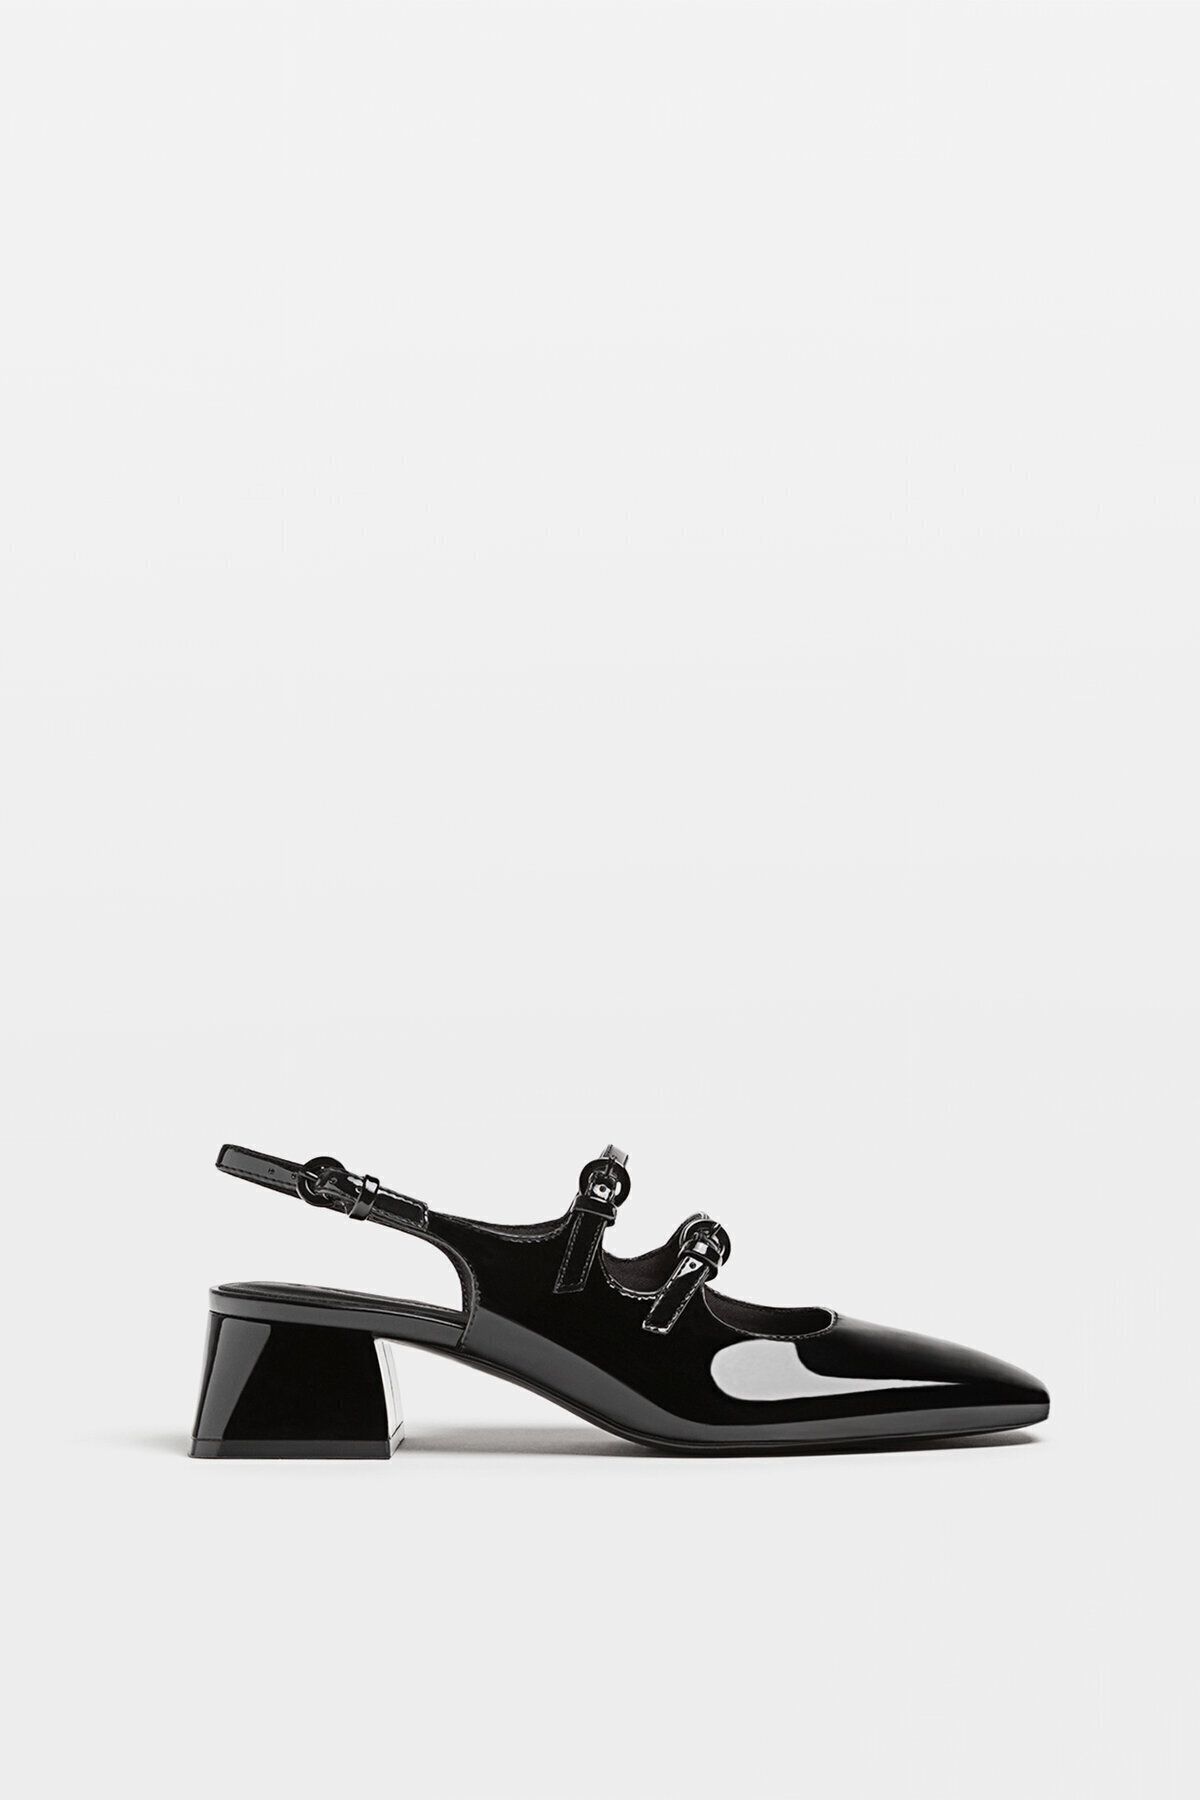 Stradivarius Siyah topuklu arkası açık balerin ayakkabı